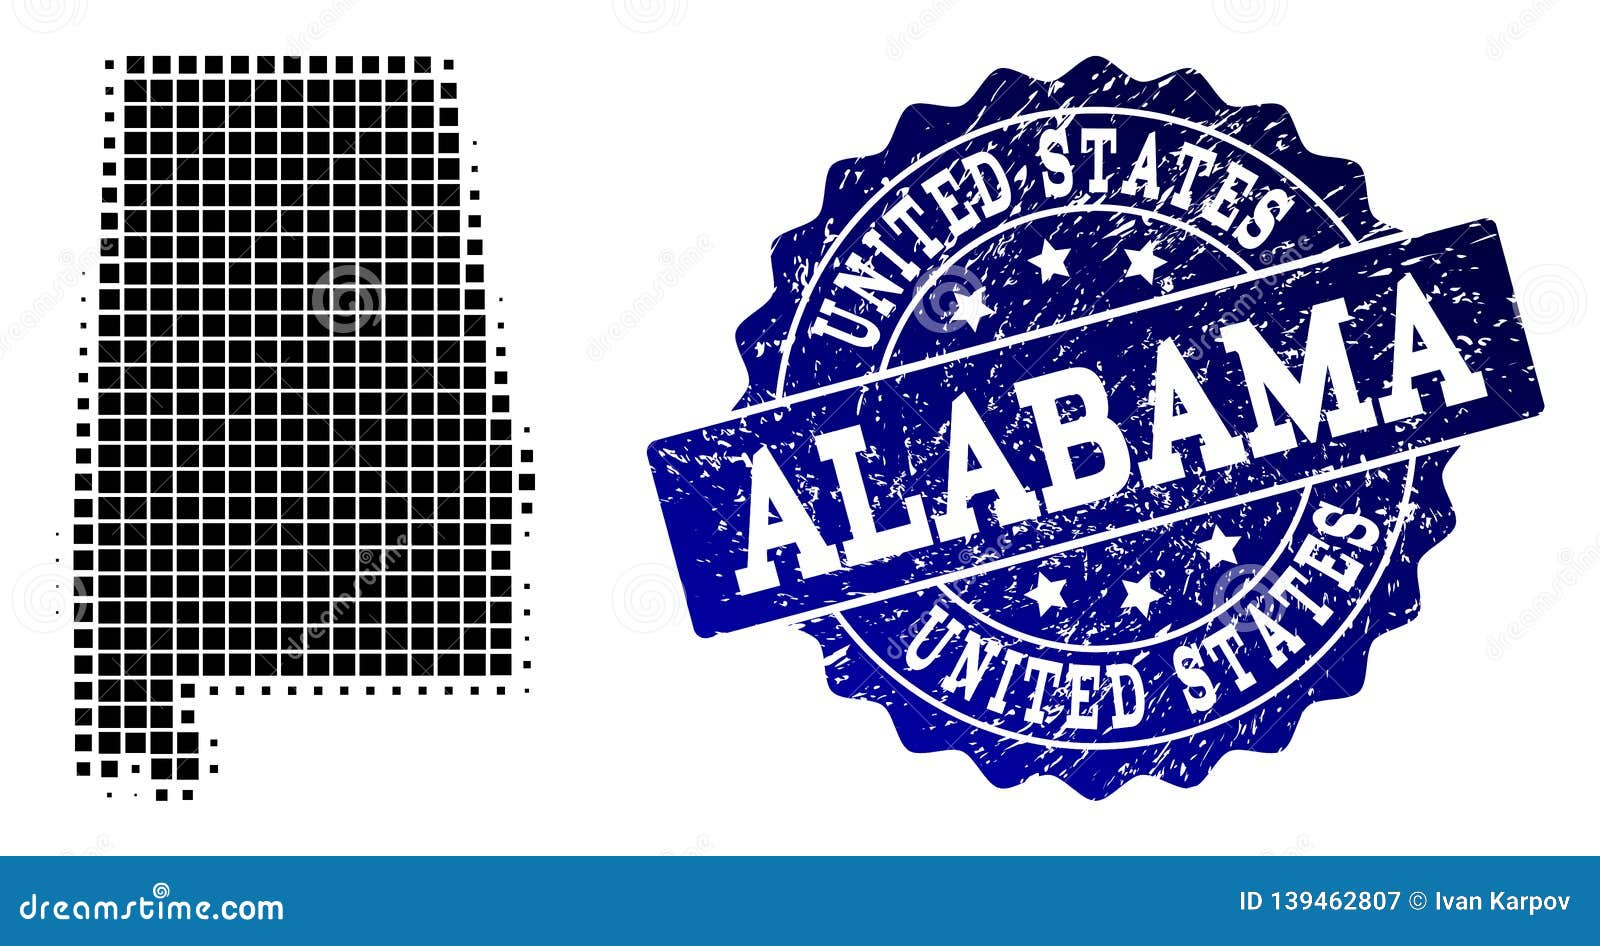 Фото штампов пиксельное. State of Alabama symbol elements. Make you state